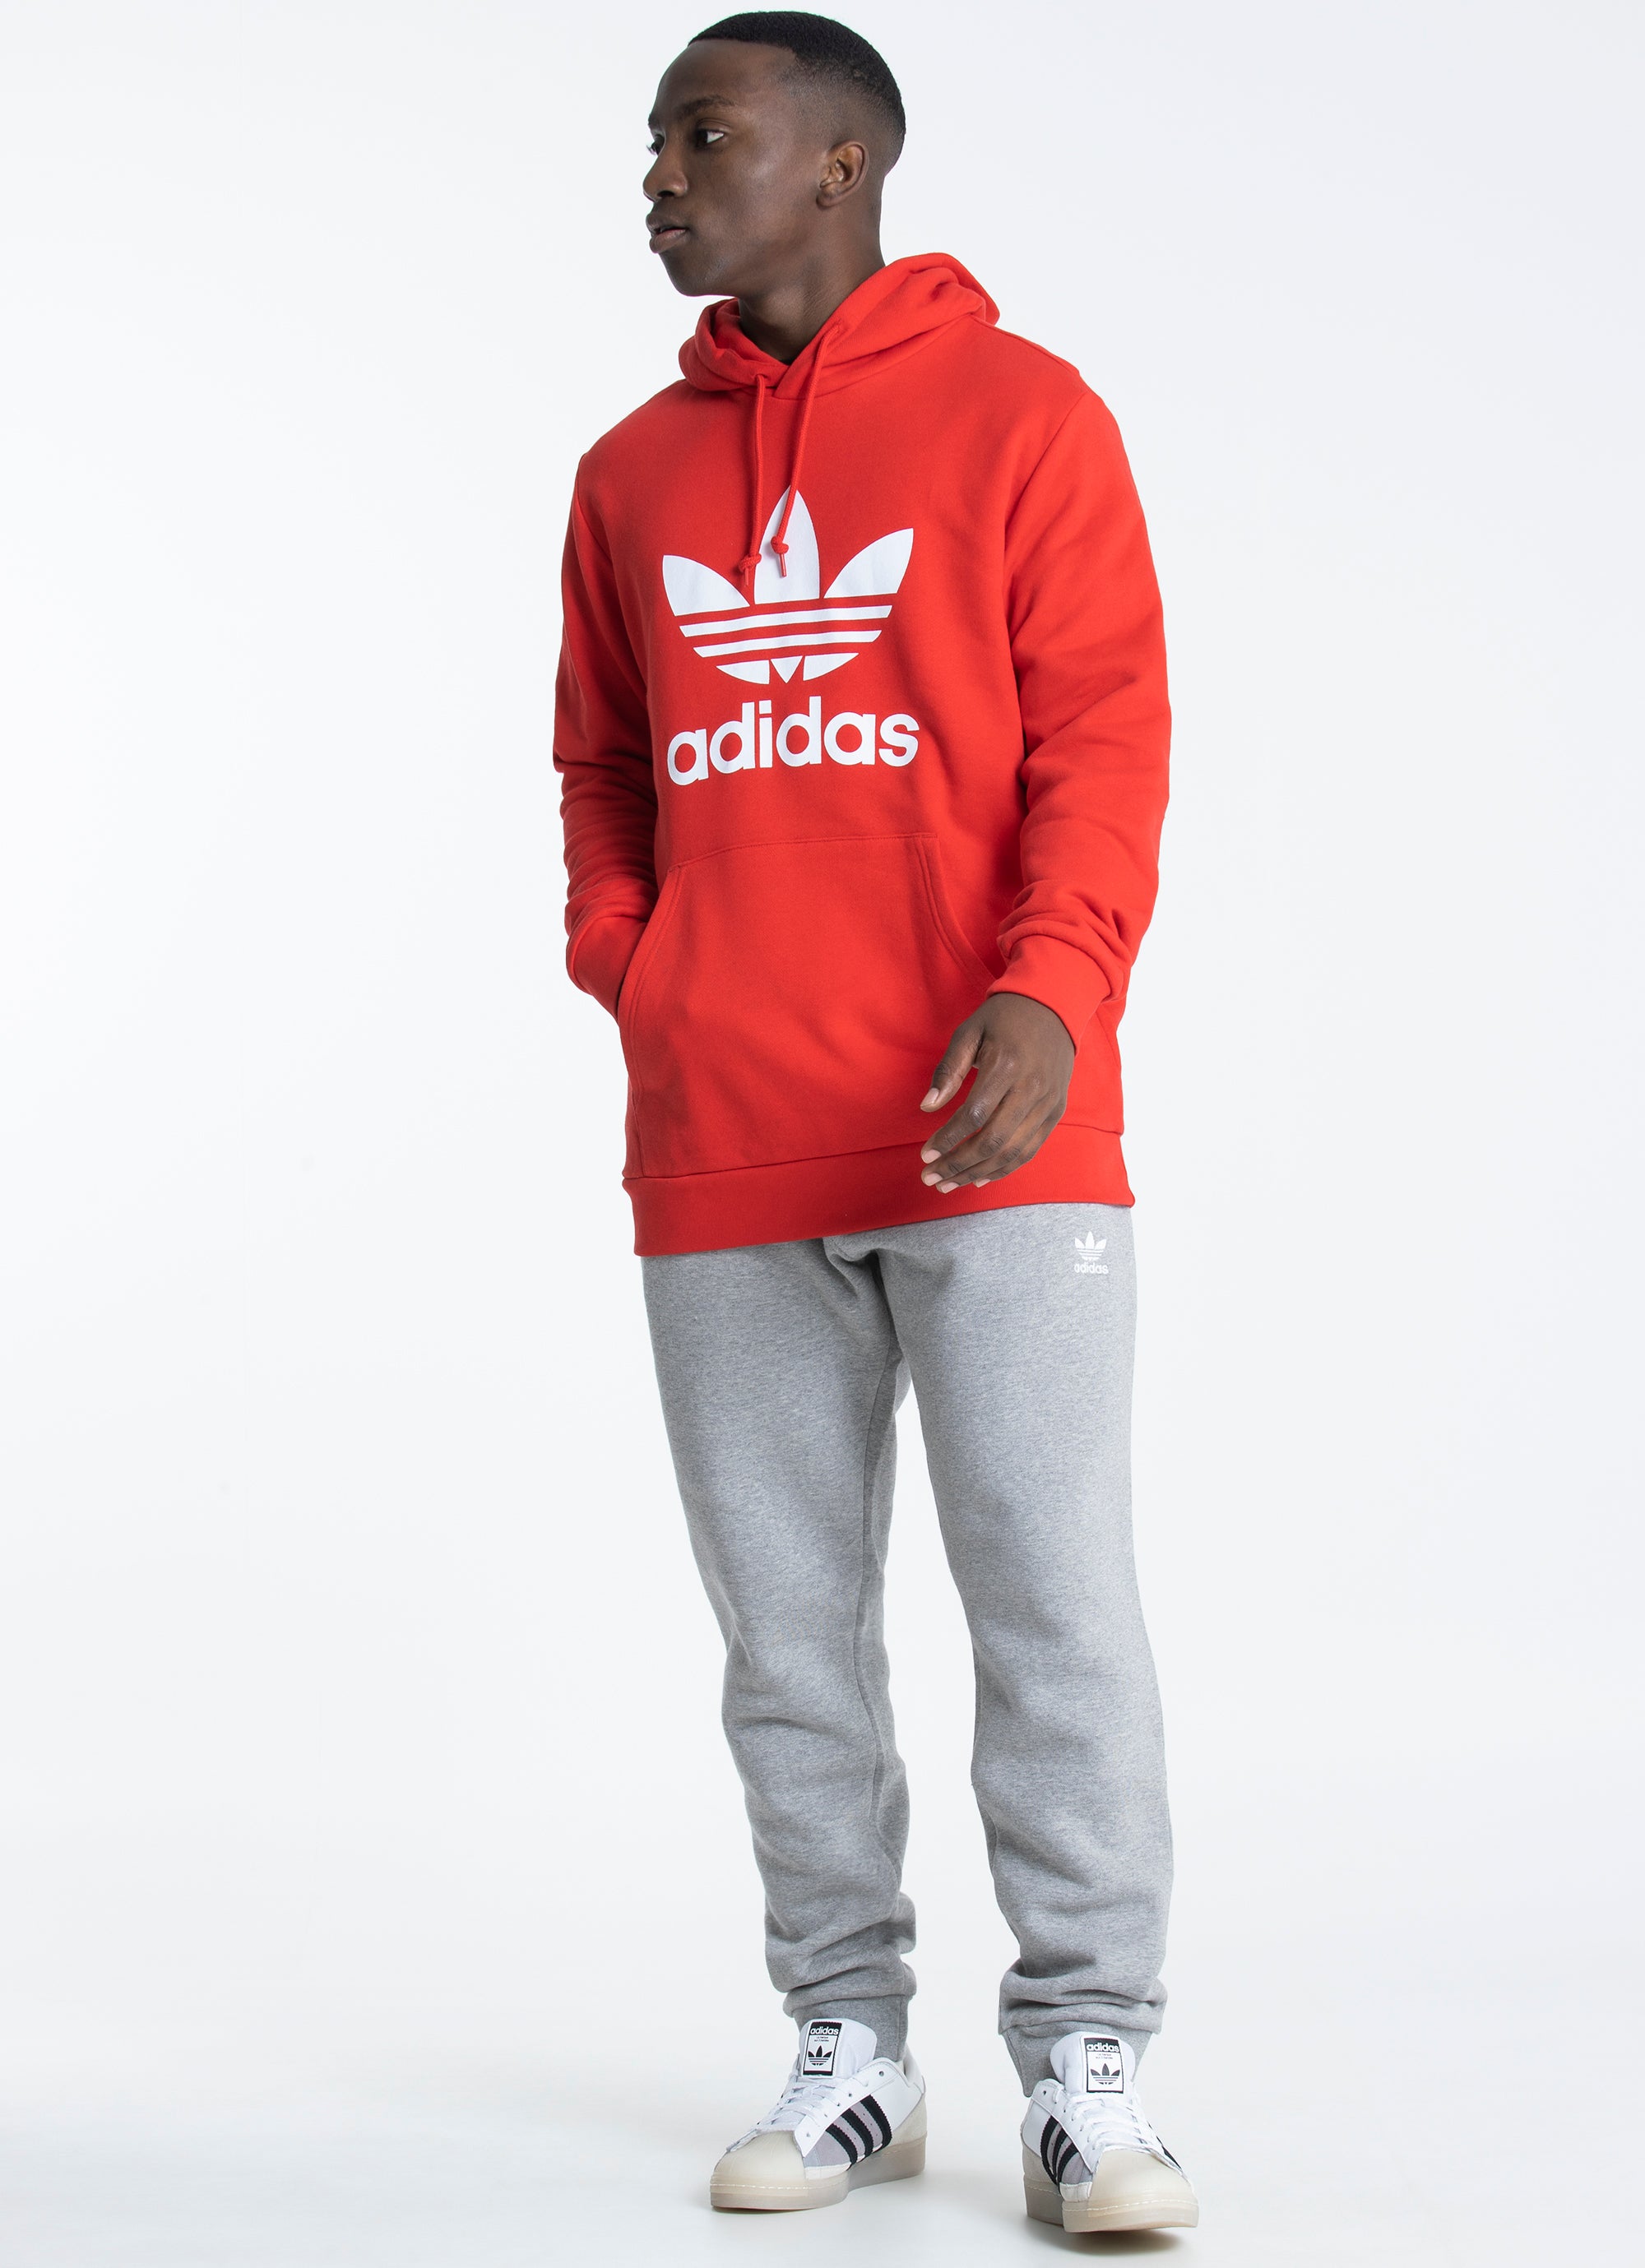 Adidas Originals Trefoil Hoodie in Unknown | Red Rat